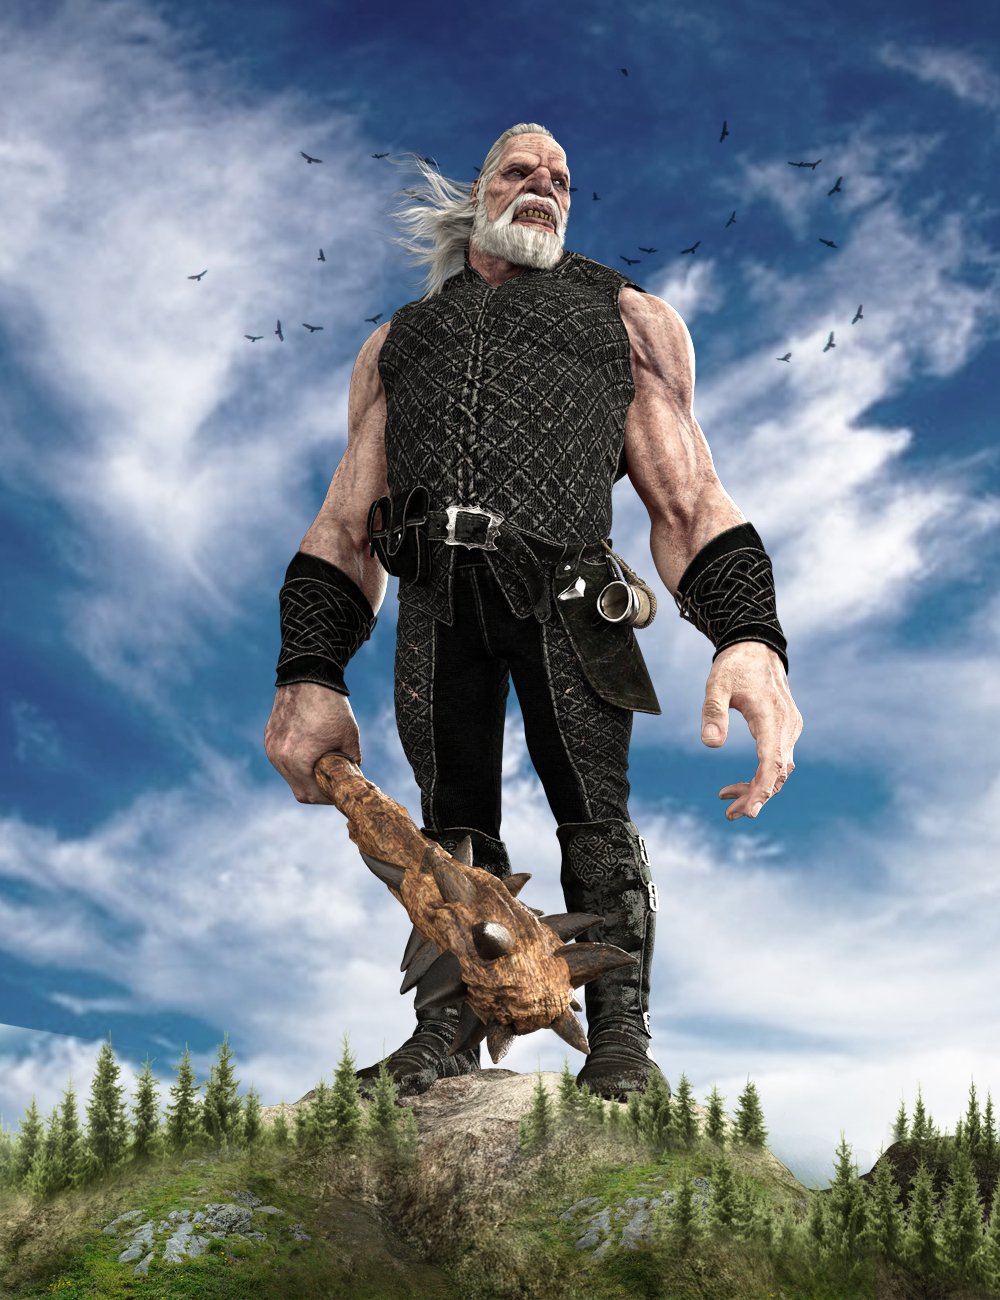 Giant HD for The Brute 8 by: Josh Crockett, 3D Models by Daz 3D